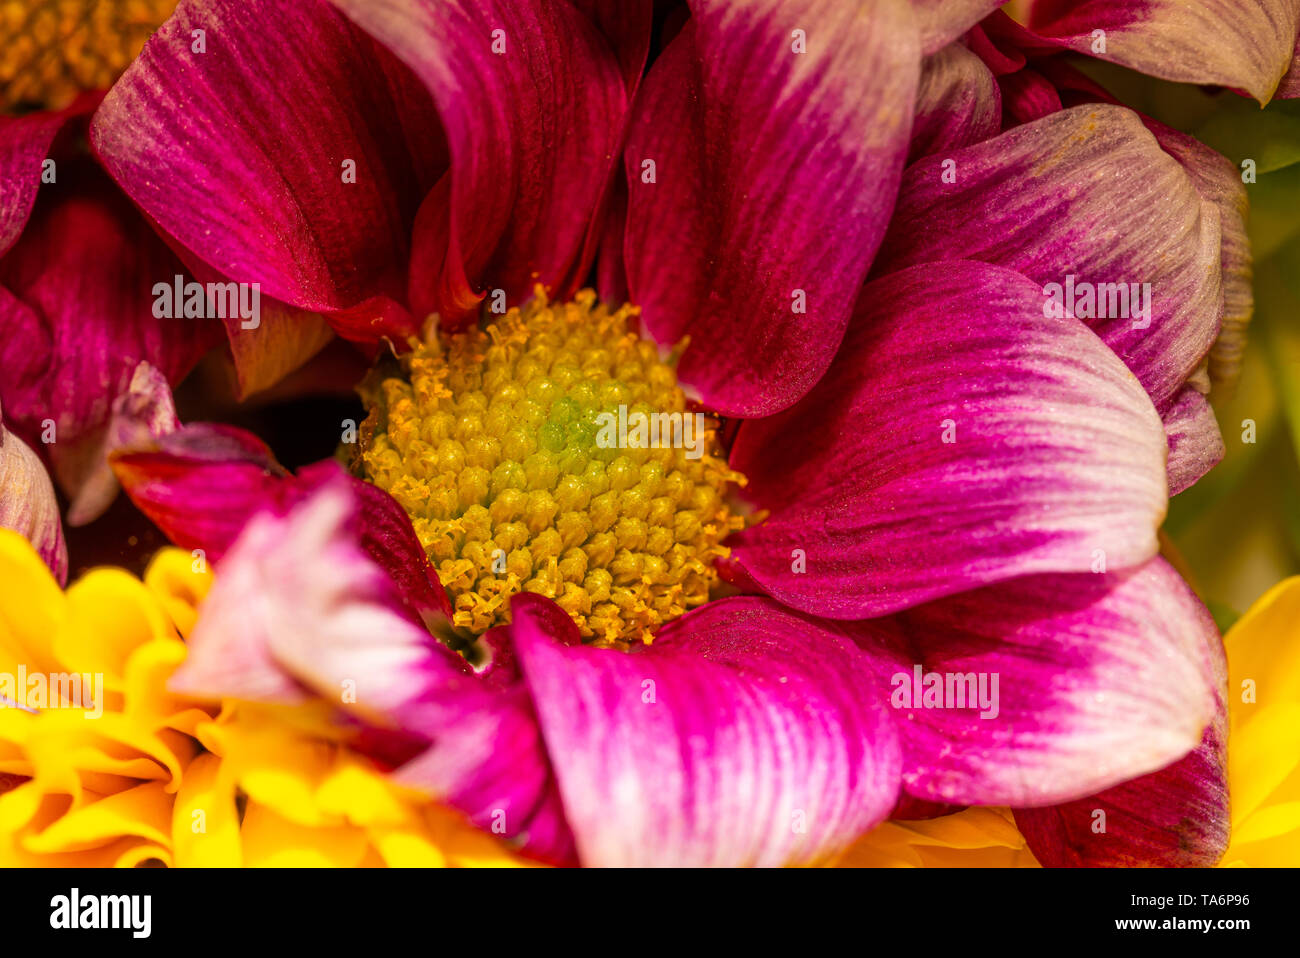 Cierre horizontal-foto de flor en flor. Bloom tiene centro amarillo brillante lleno de pistilos y estigmas. Tiene bonitas hojas de pétalos de color púrpura y rojo. Foto de stock